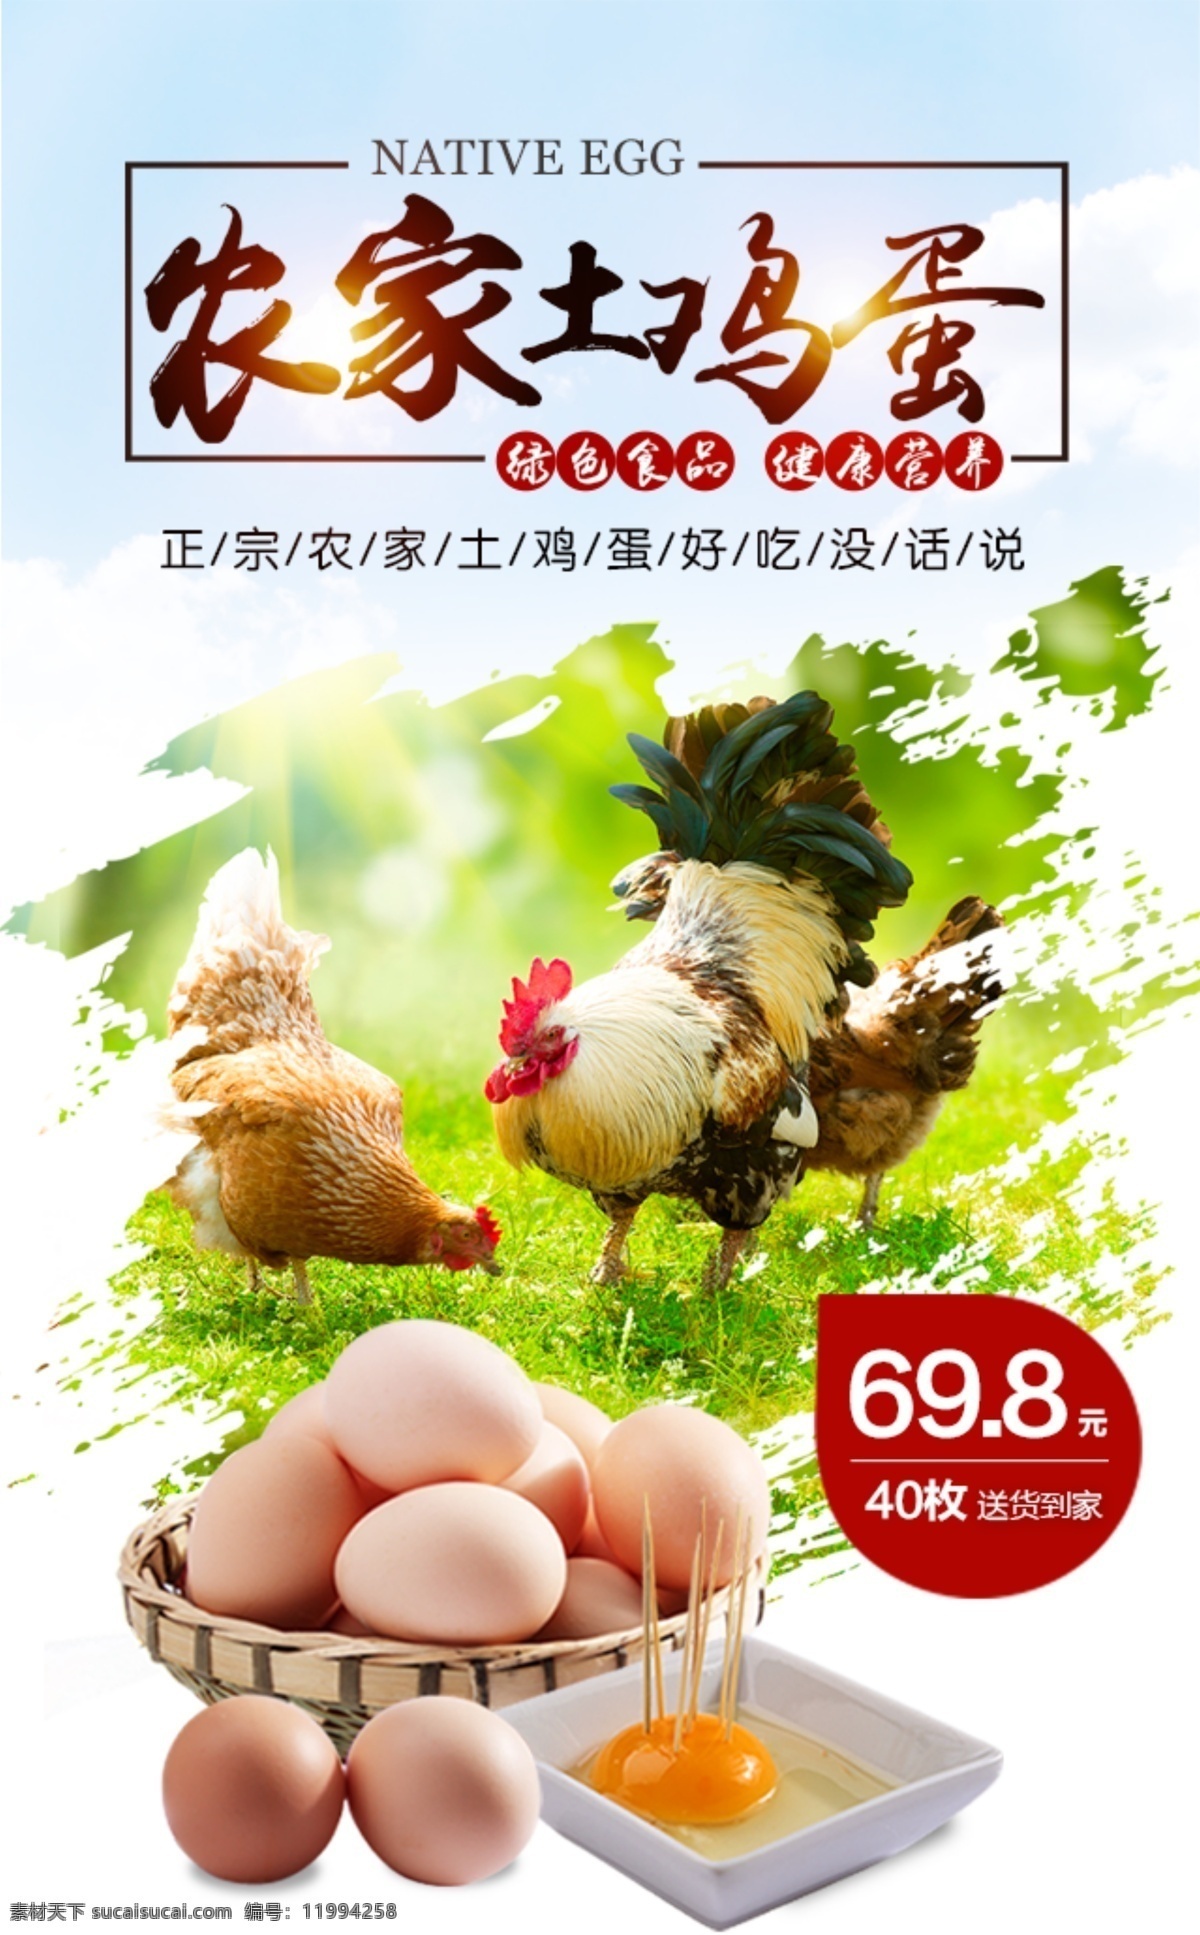 农家 土 鸡蛋 手机 端 土鸡蛋 手机端 海报 宣传图 绿色食品 母鸡